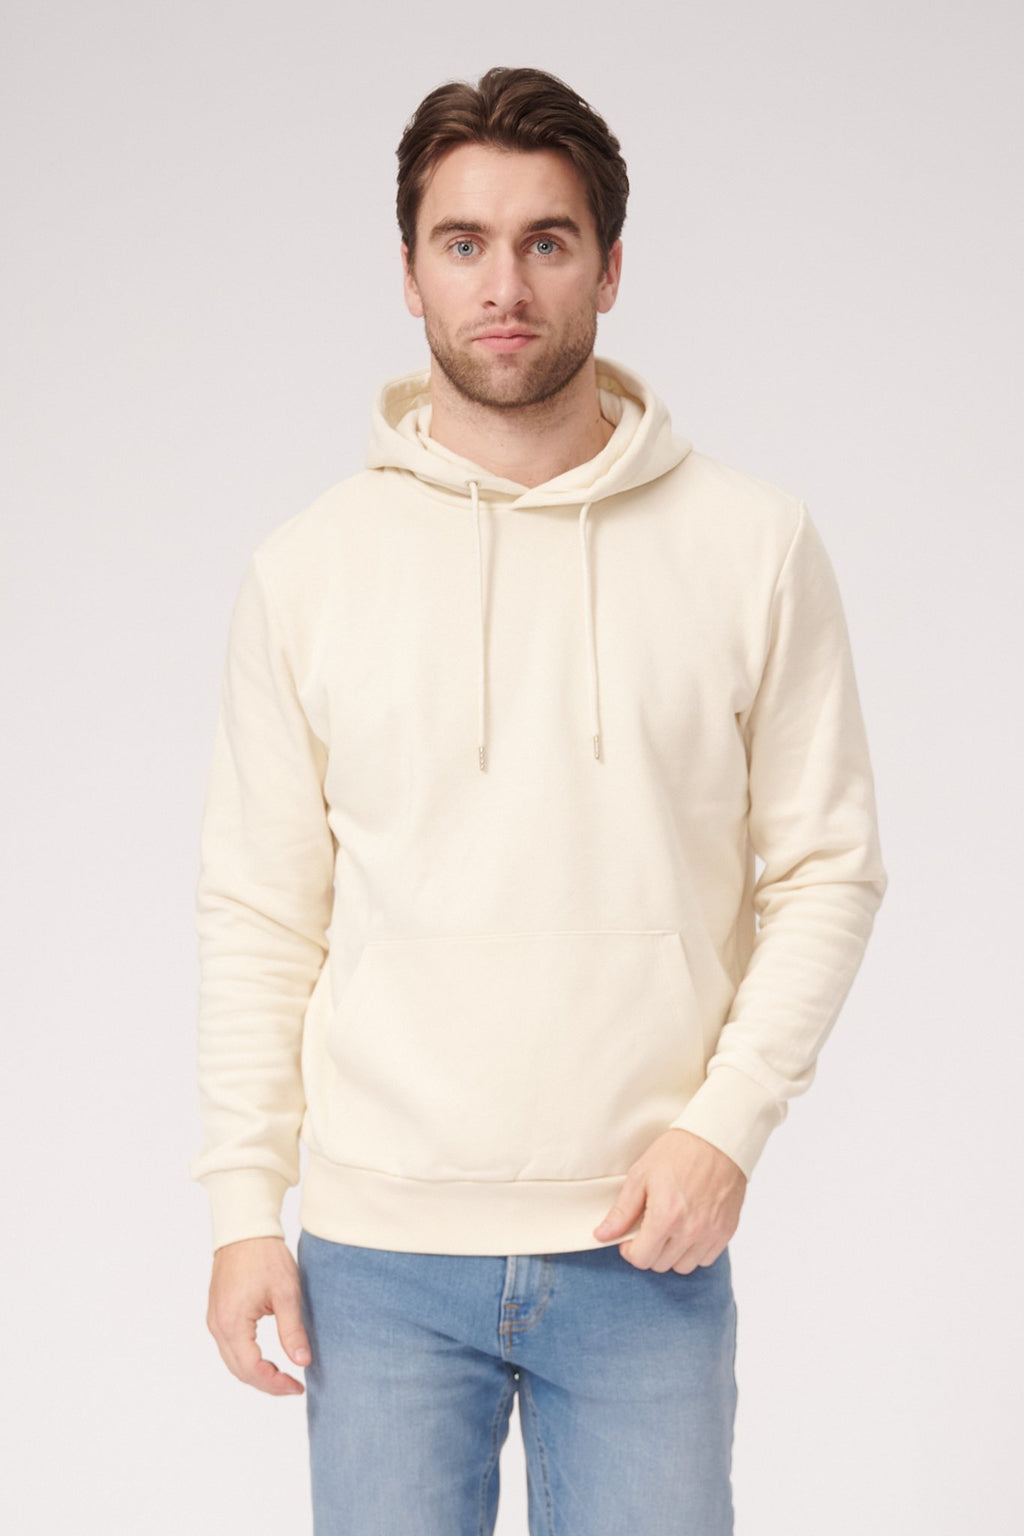 Basic Sweatsuit met hoodie (licht beige) - pakketdeal